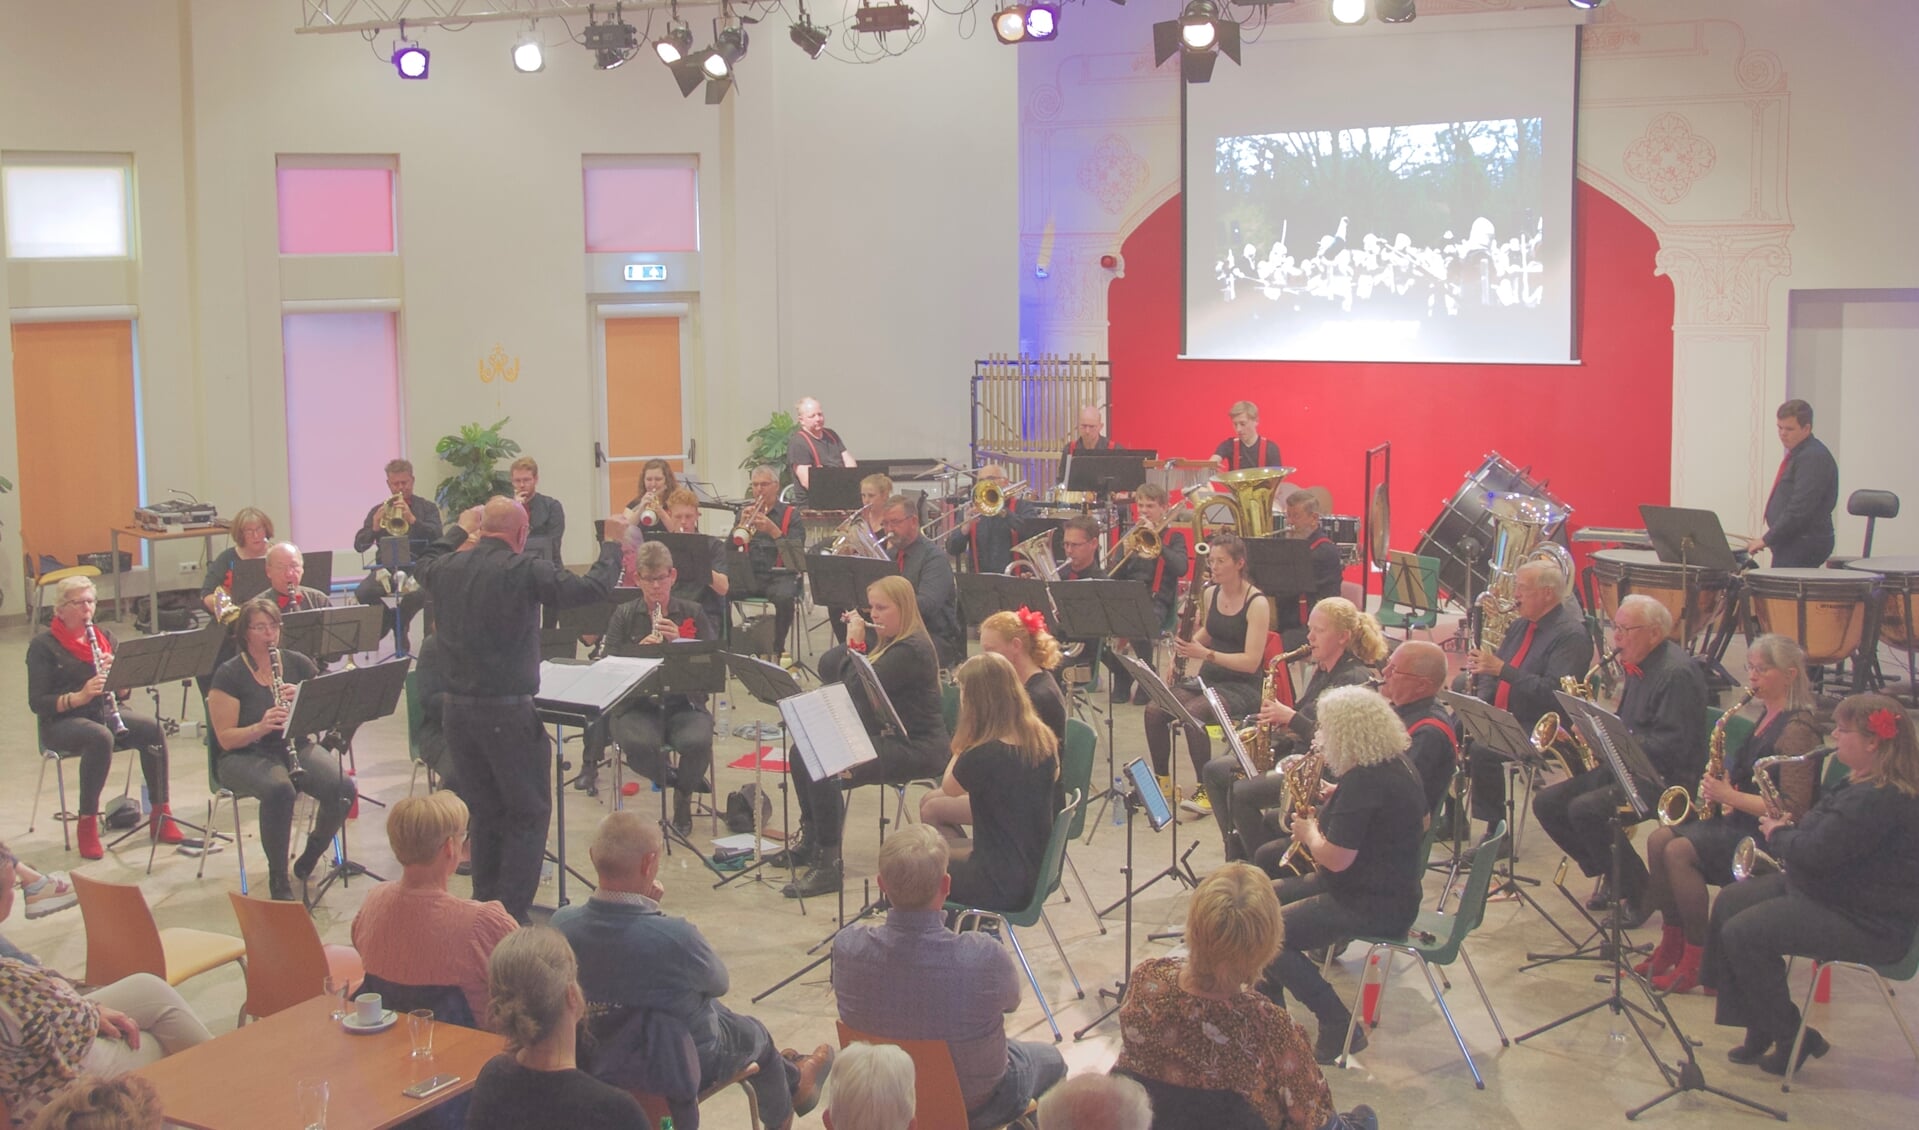 De grote zaal van het Kulturhus zal omgetoverd worden tot een echte bioscoop, waarbij het orkest de muziek live meespeelt met de bijbehorende filmscènes op het witte doek. Foto: PR